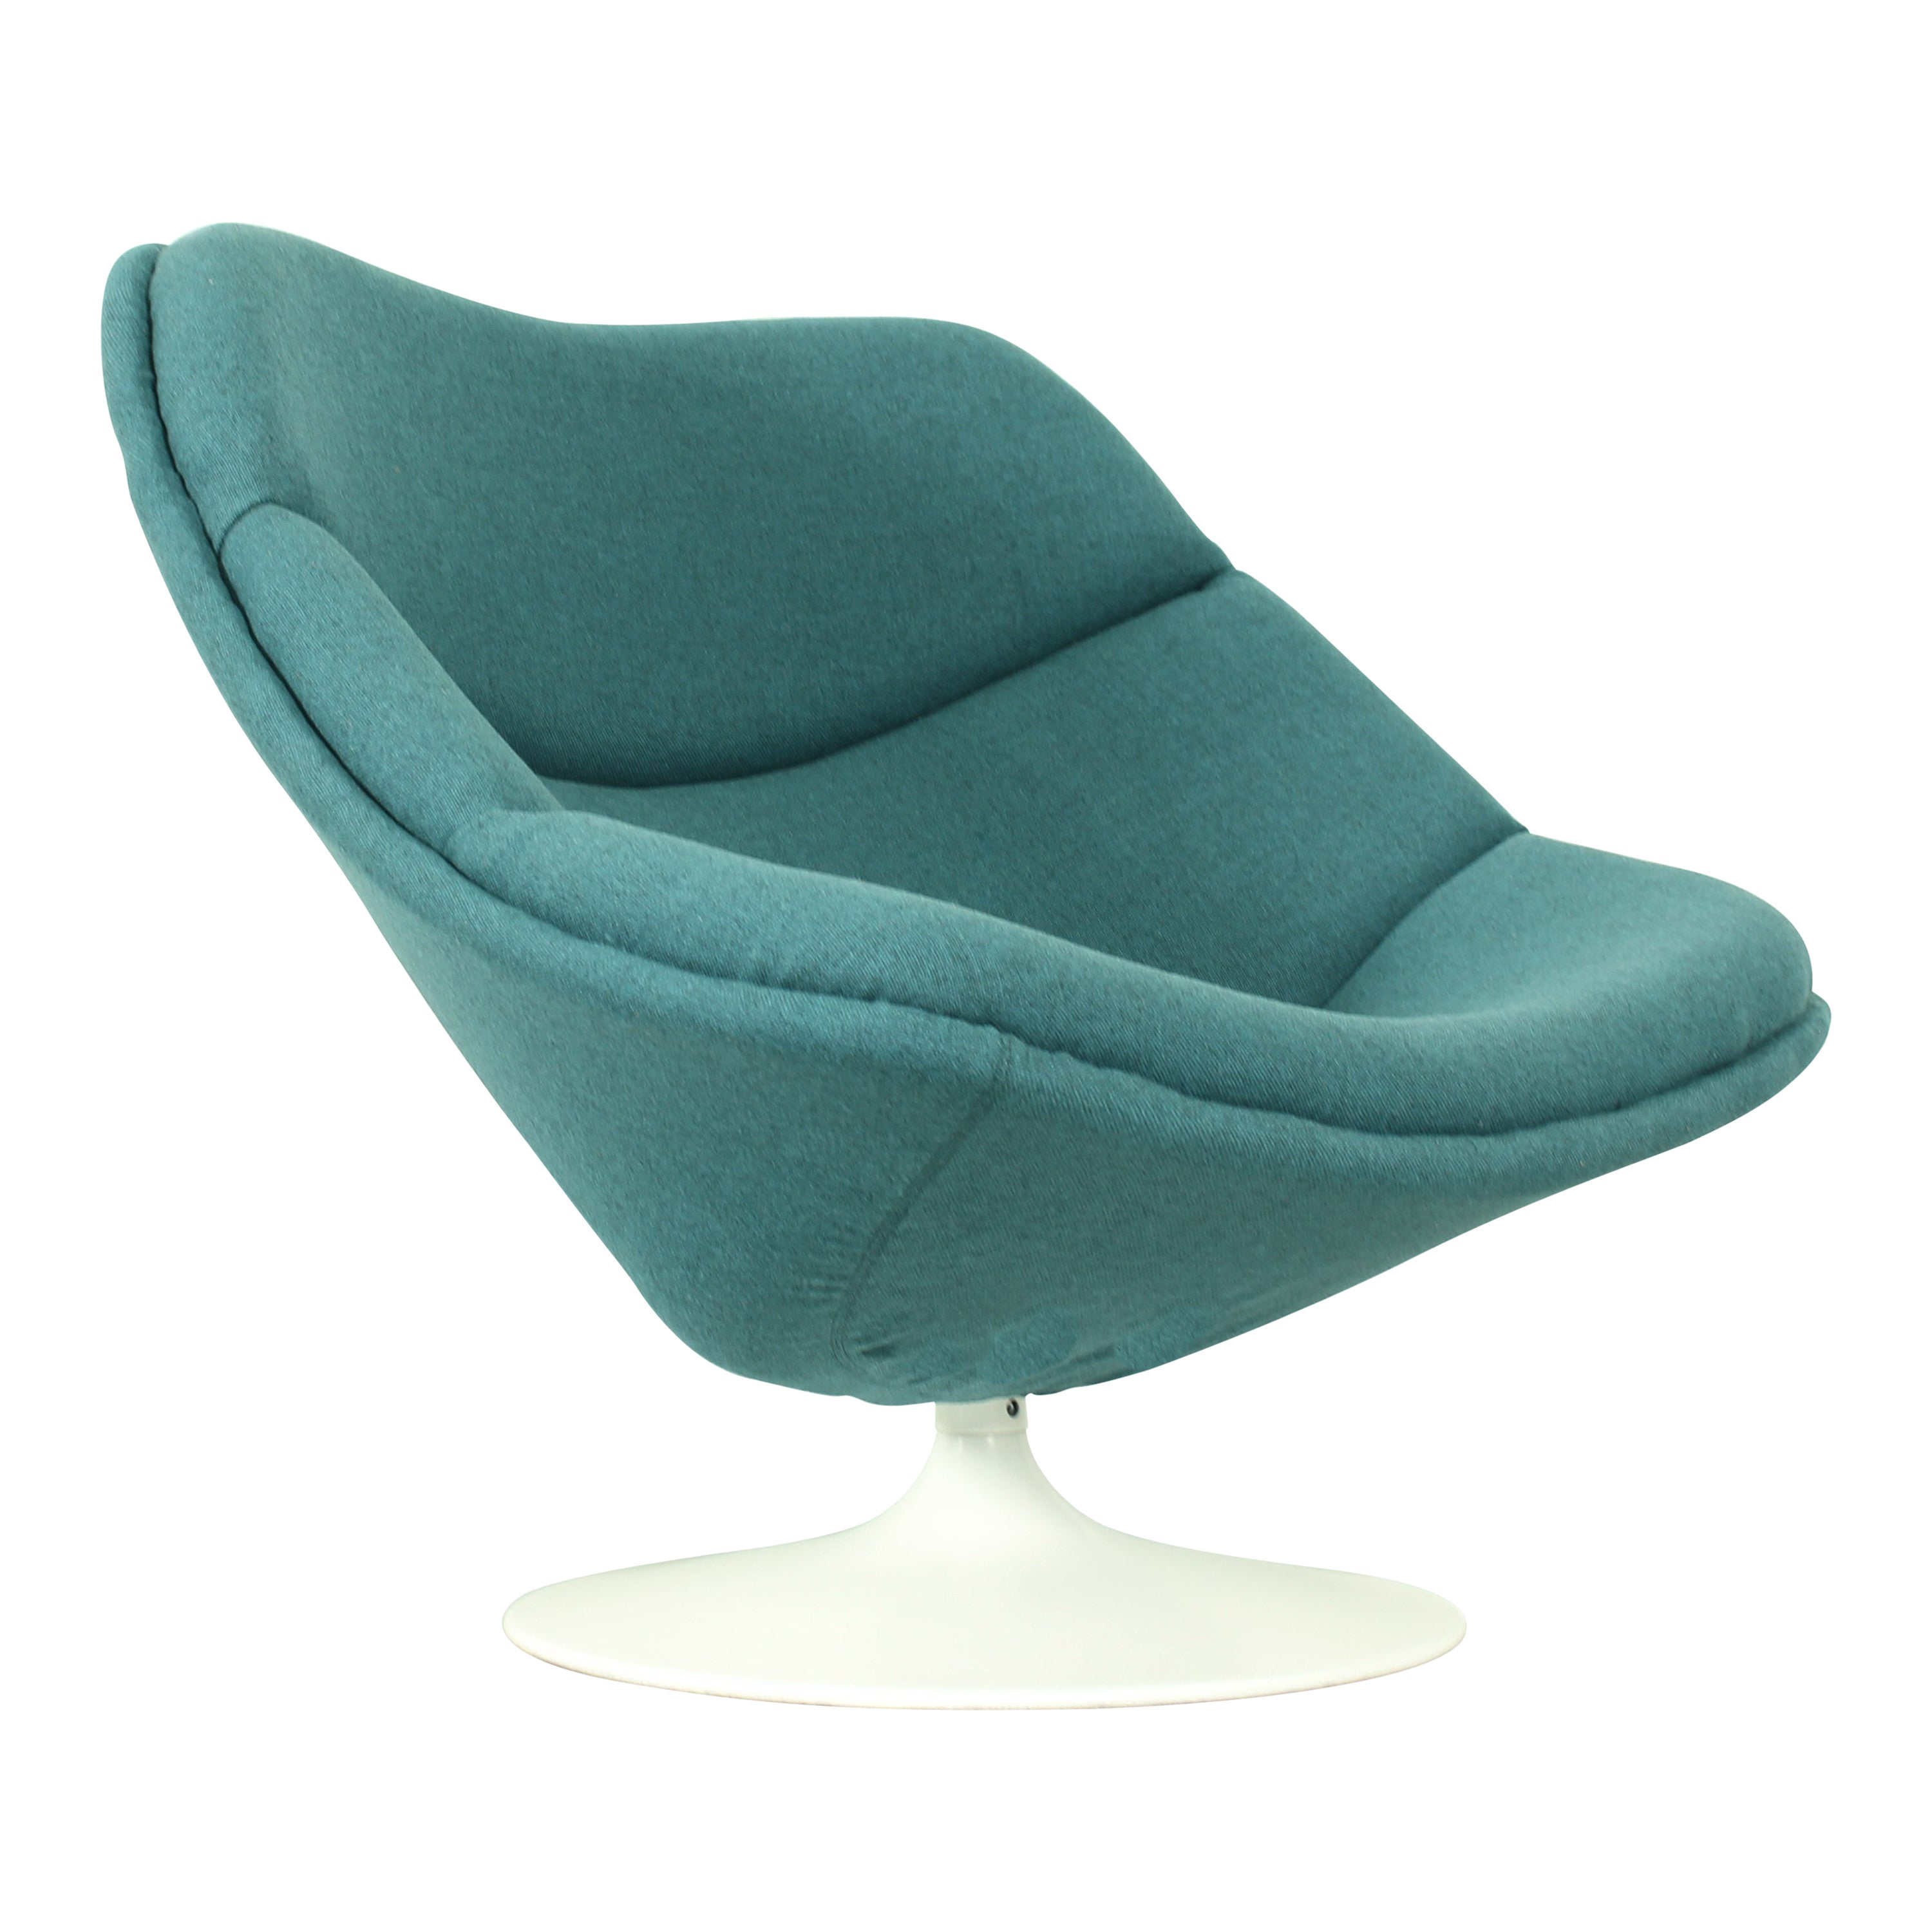 Originaler Original-Stuhl F557 von Pierre Paulin für Artifort, 1960er Jahre